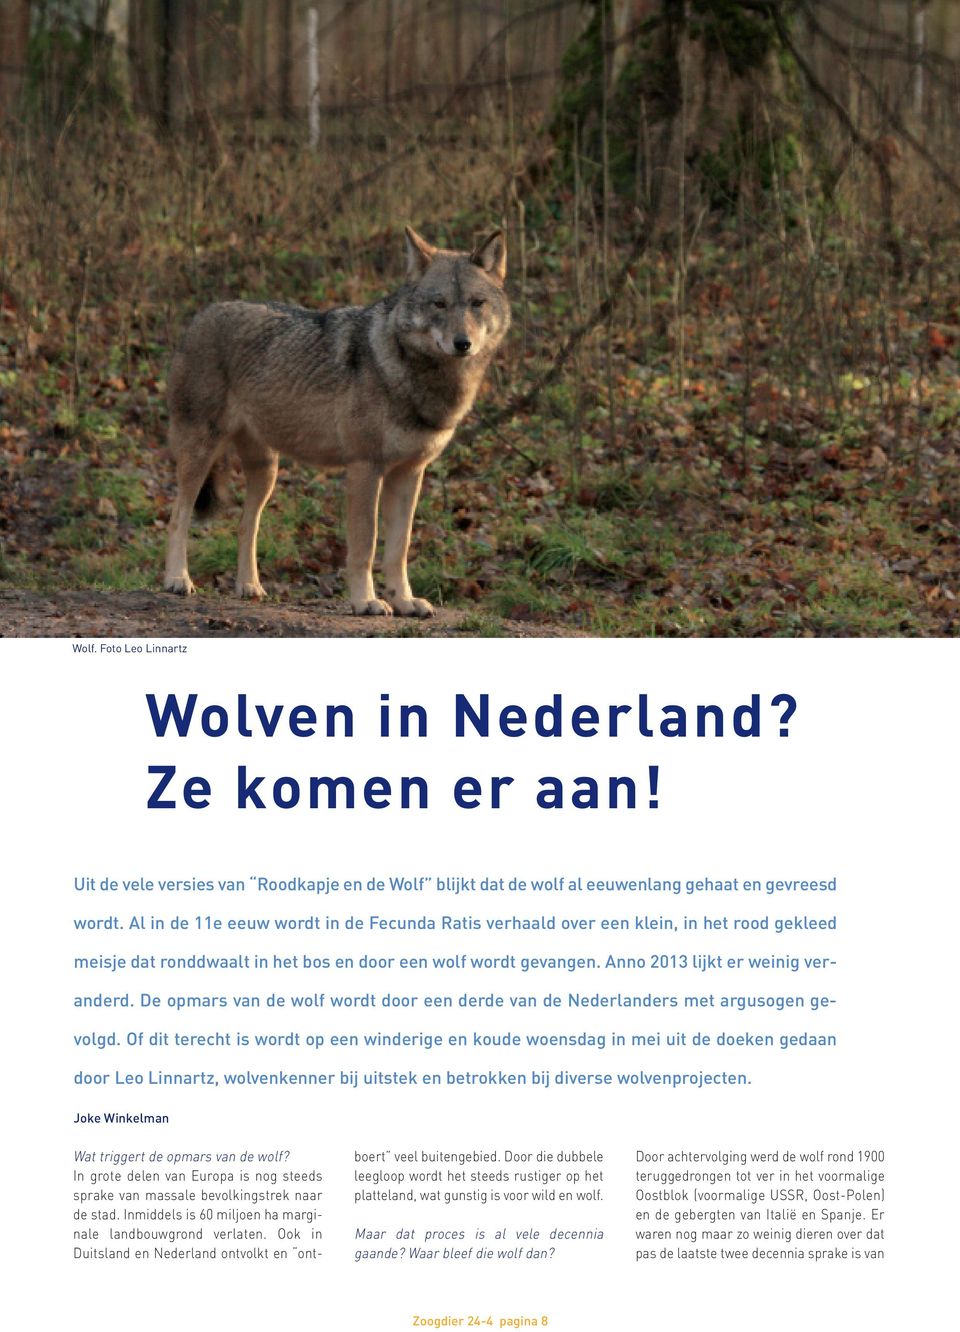 De opmars van de wolf wordt door een derde van de Nederlanders met argusogen gevolgd.